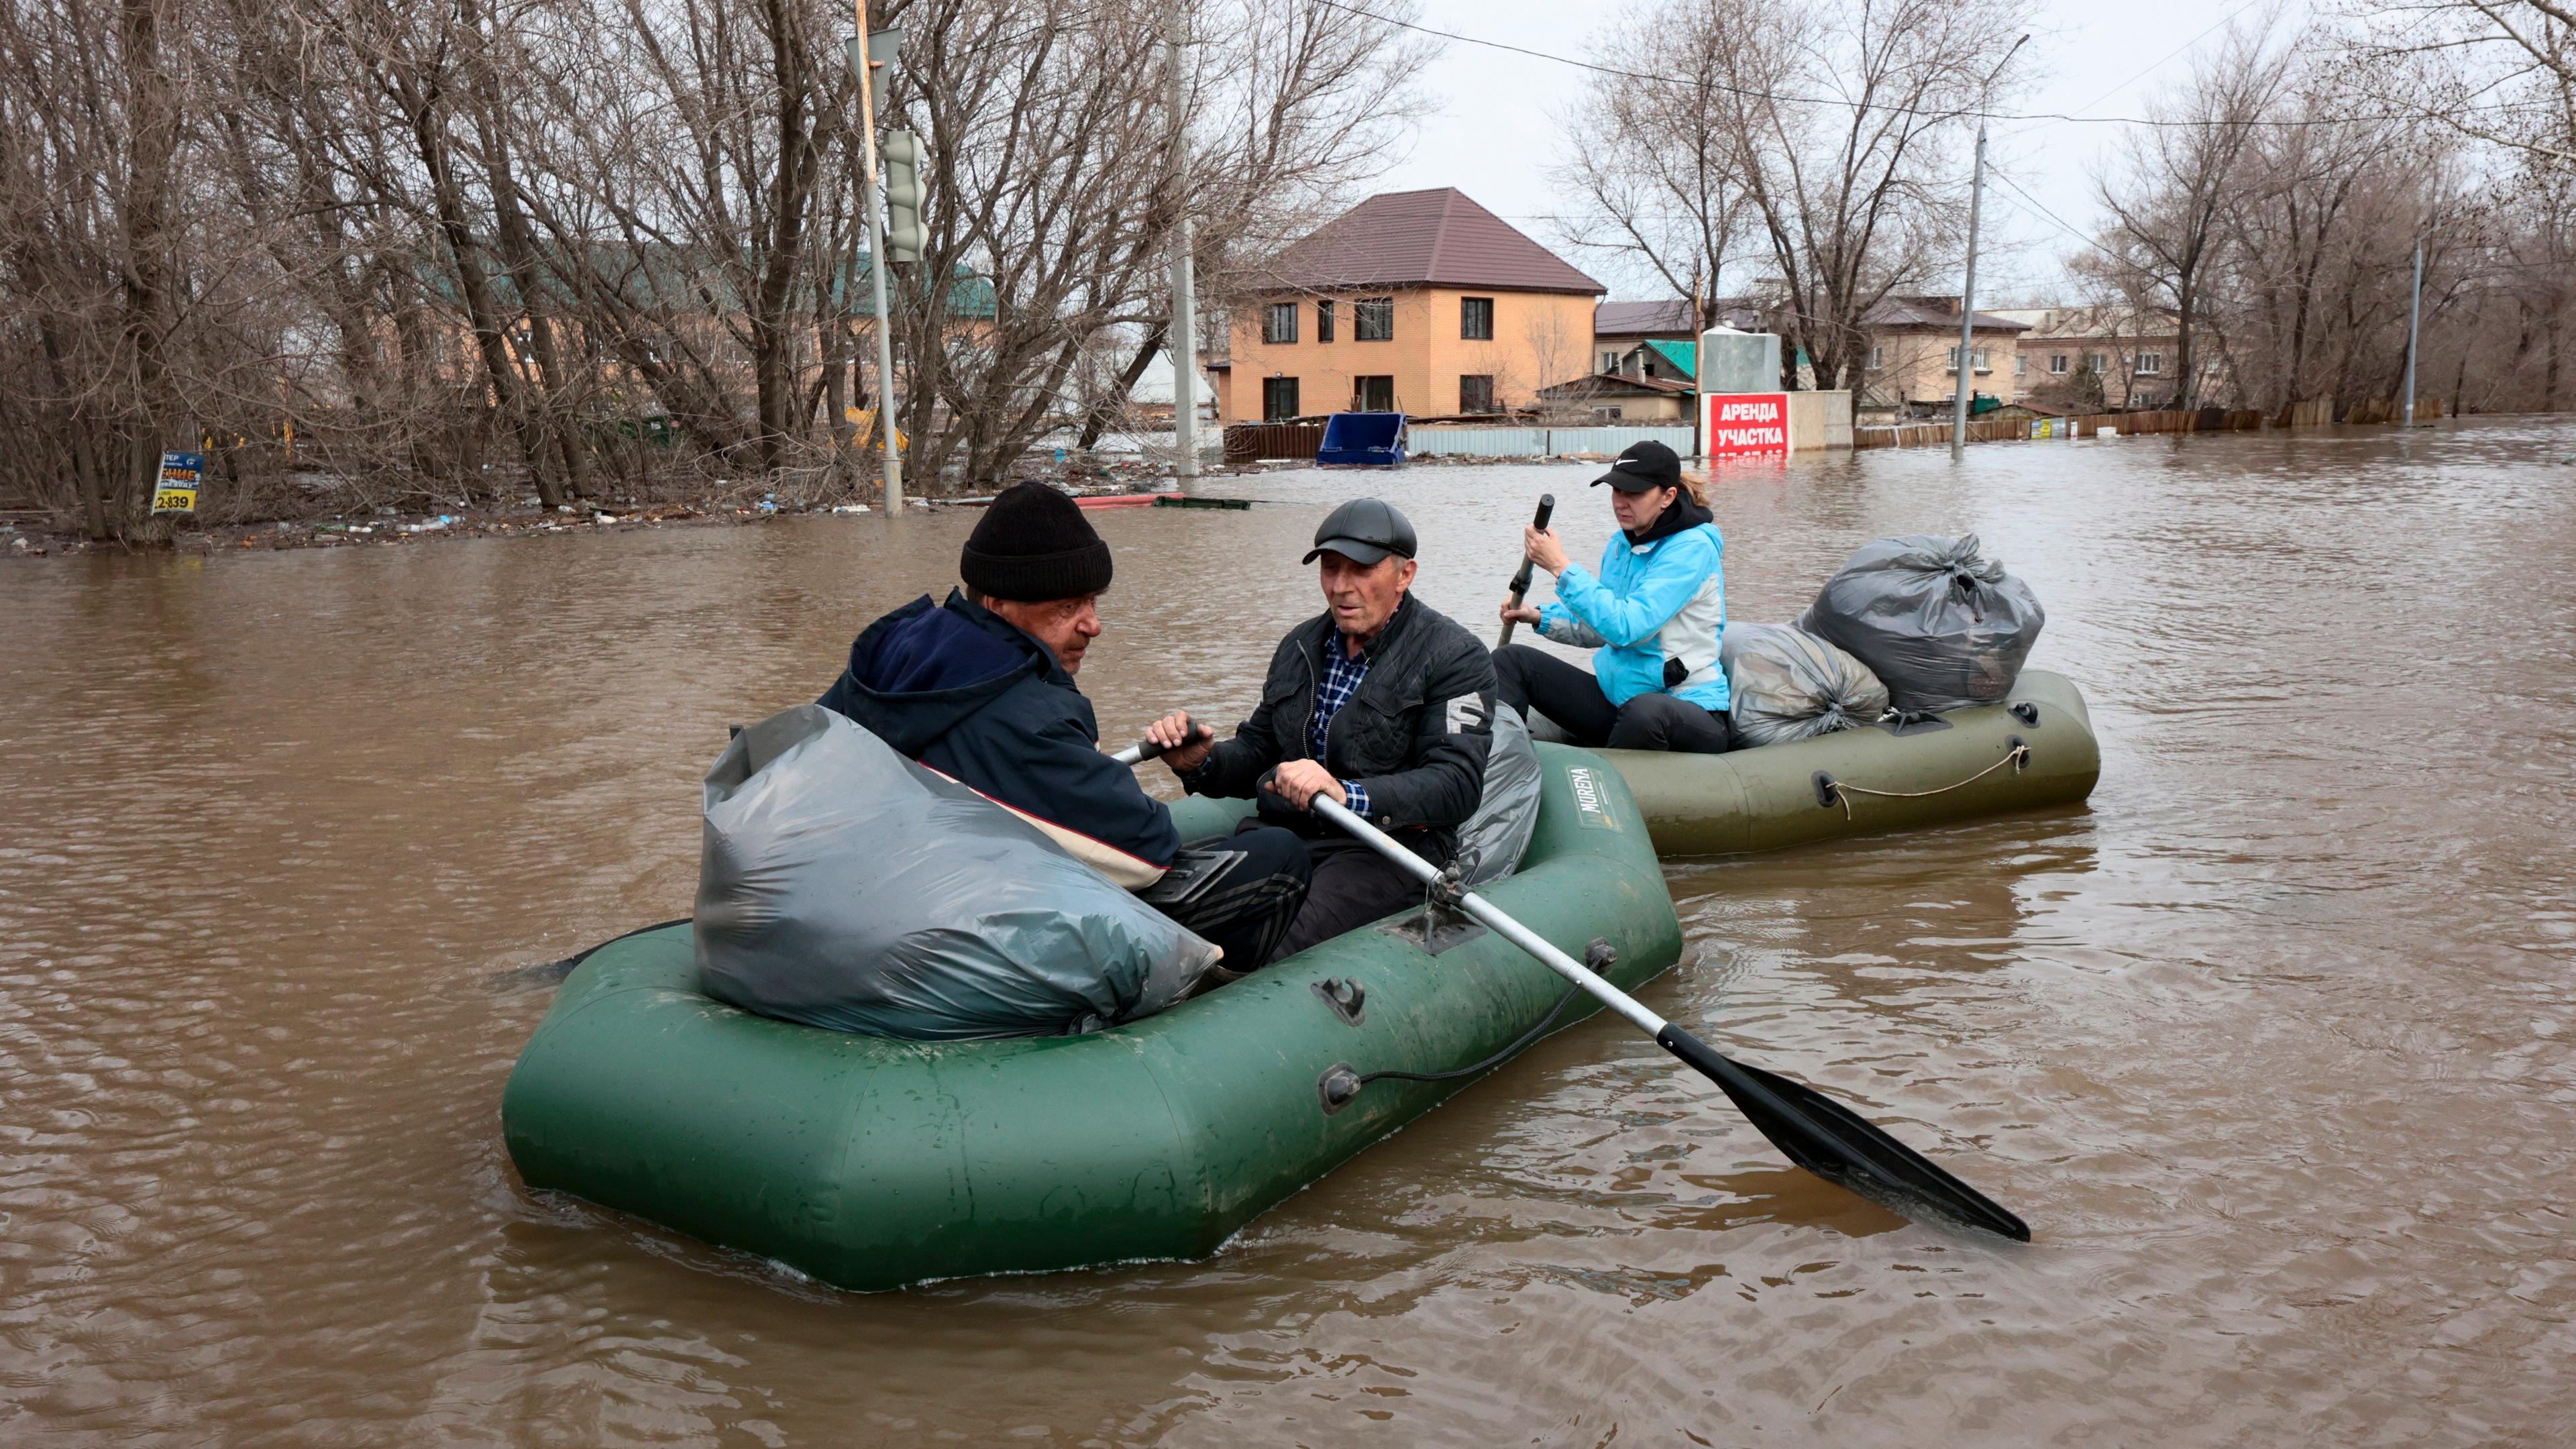 Russland, Orenburg: Anwohner rudern Boote auf der überfluteten Straße.